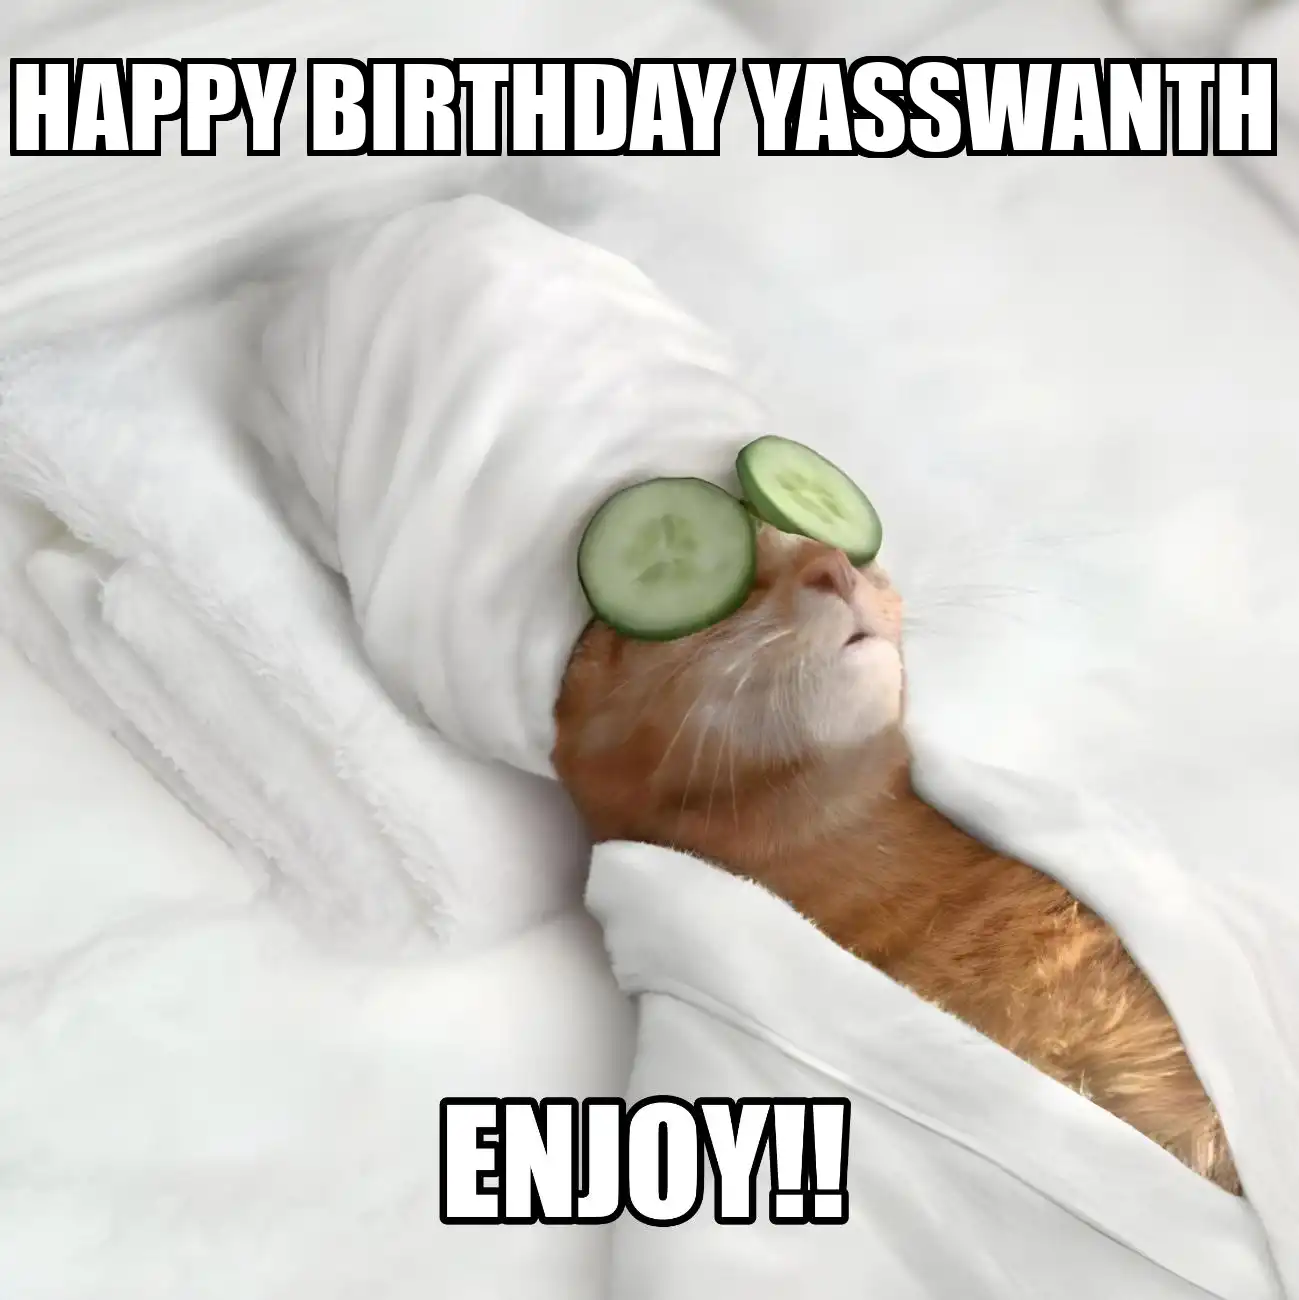 Happy Birthday Yasswanth Enjoy Cat Meme